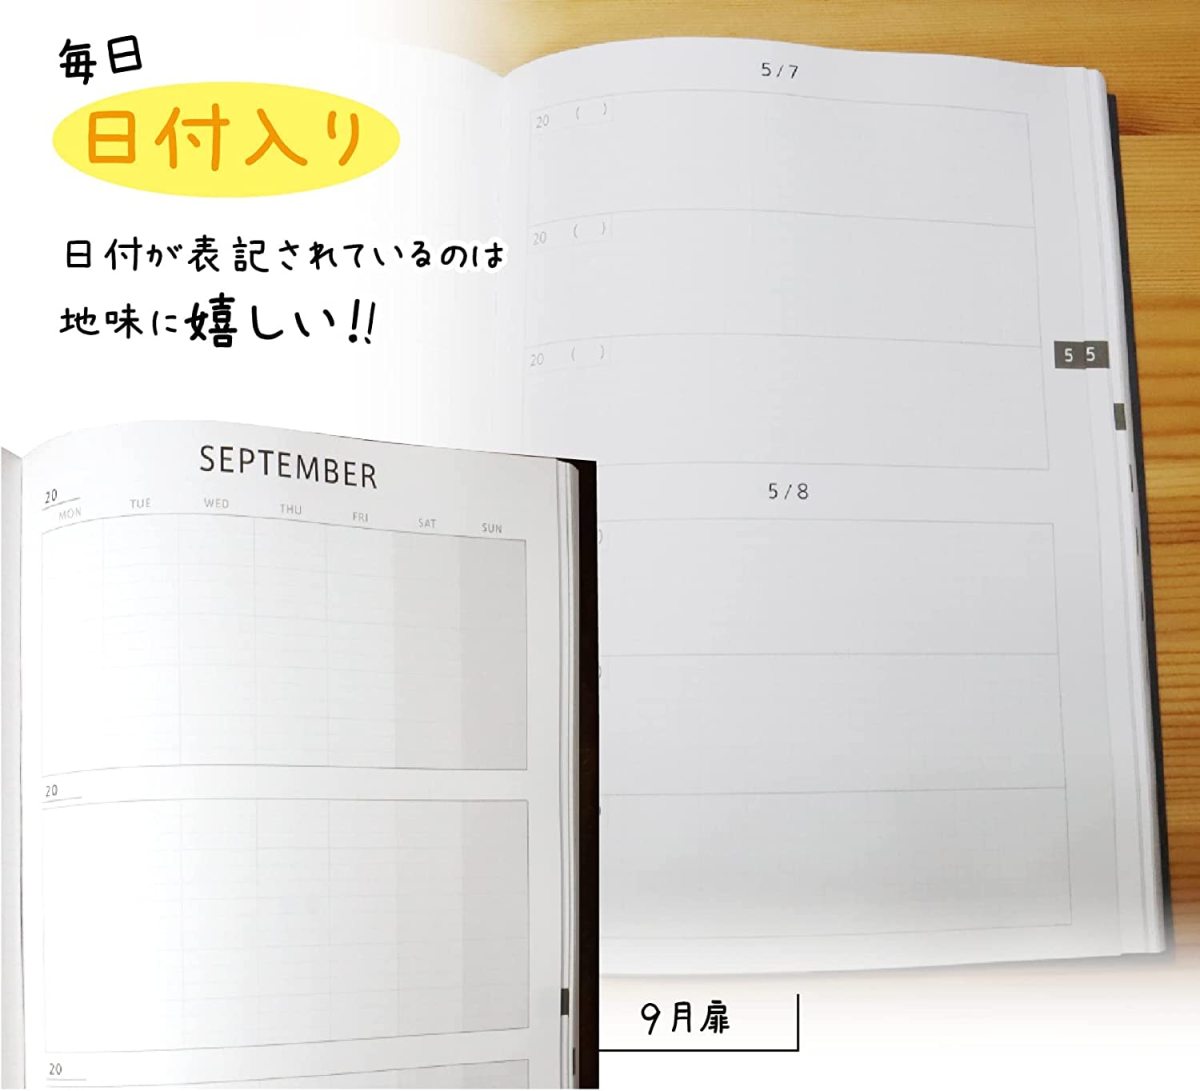 3 год дневник дневник .B5 дневник чёрный (26cm×18cm) Note жизнь сделано в Японии soft покрытие дата . отображать есть ( когда из тоже начало ...)